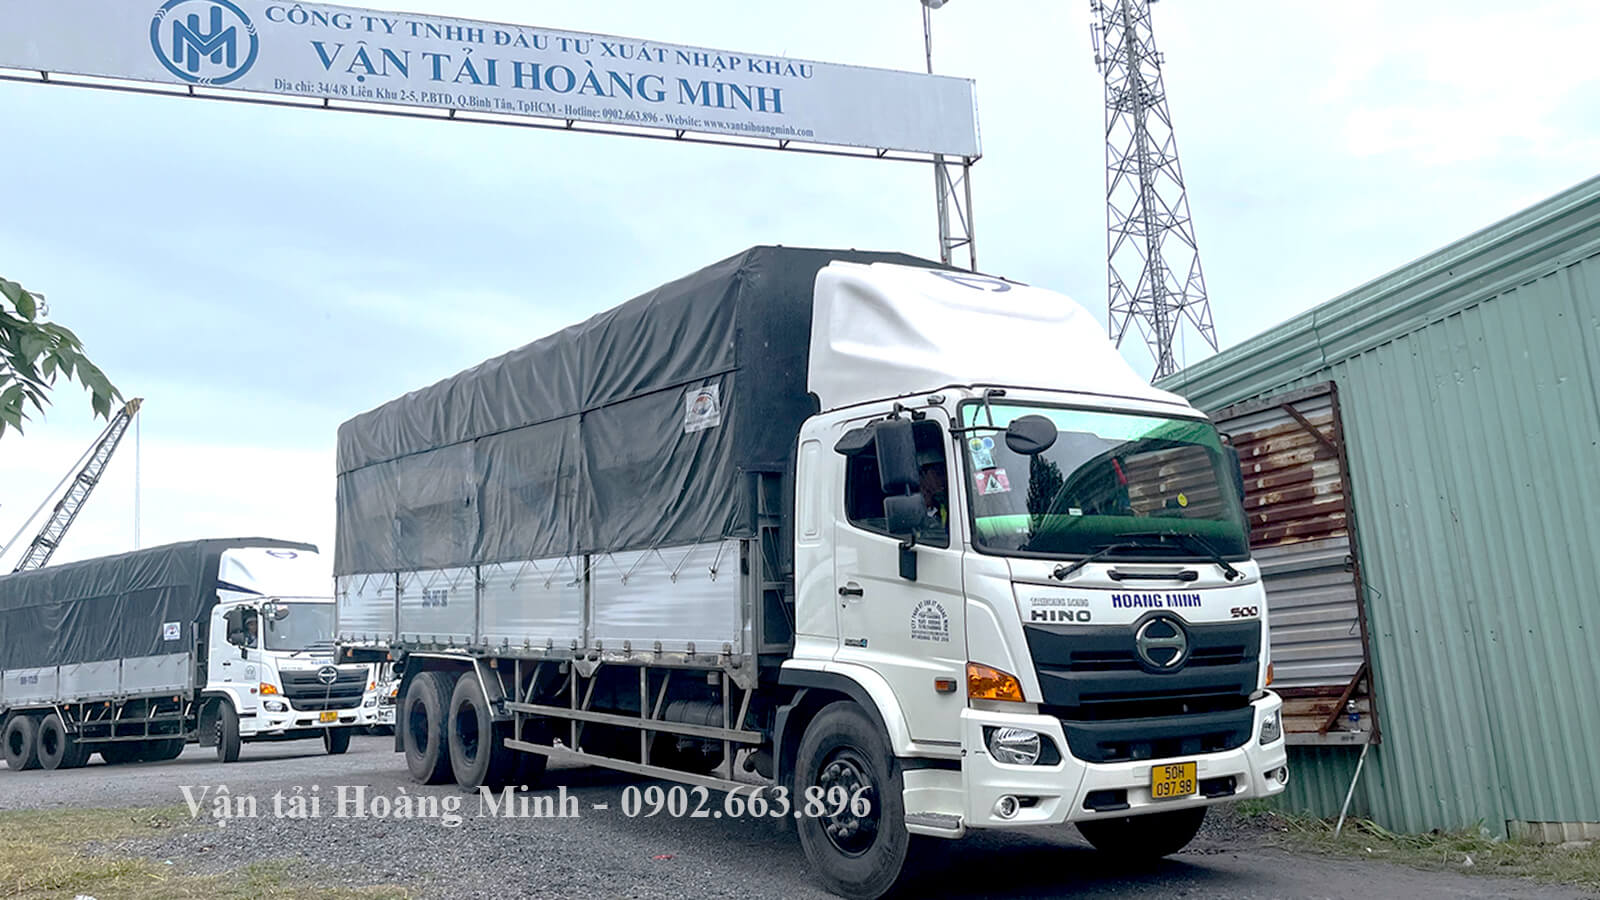 Cho thuê xe tải chở hàng Huyện Củ Chi giá rẻ nhất TpHCM.jpg